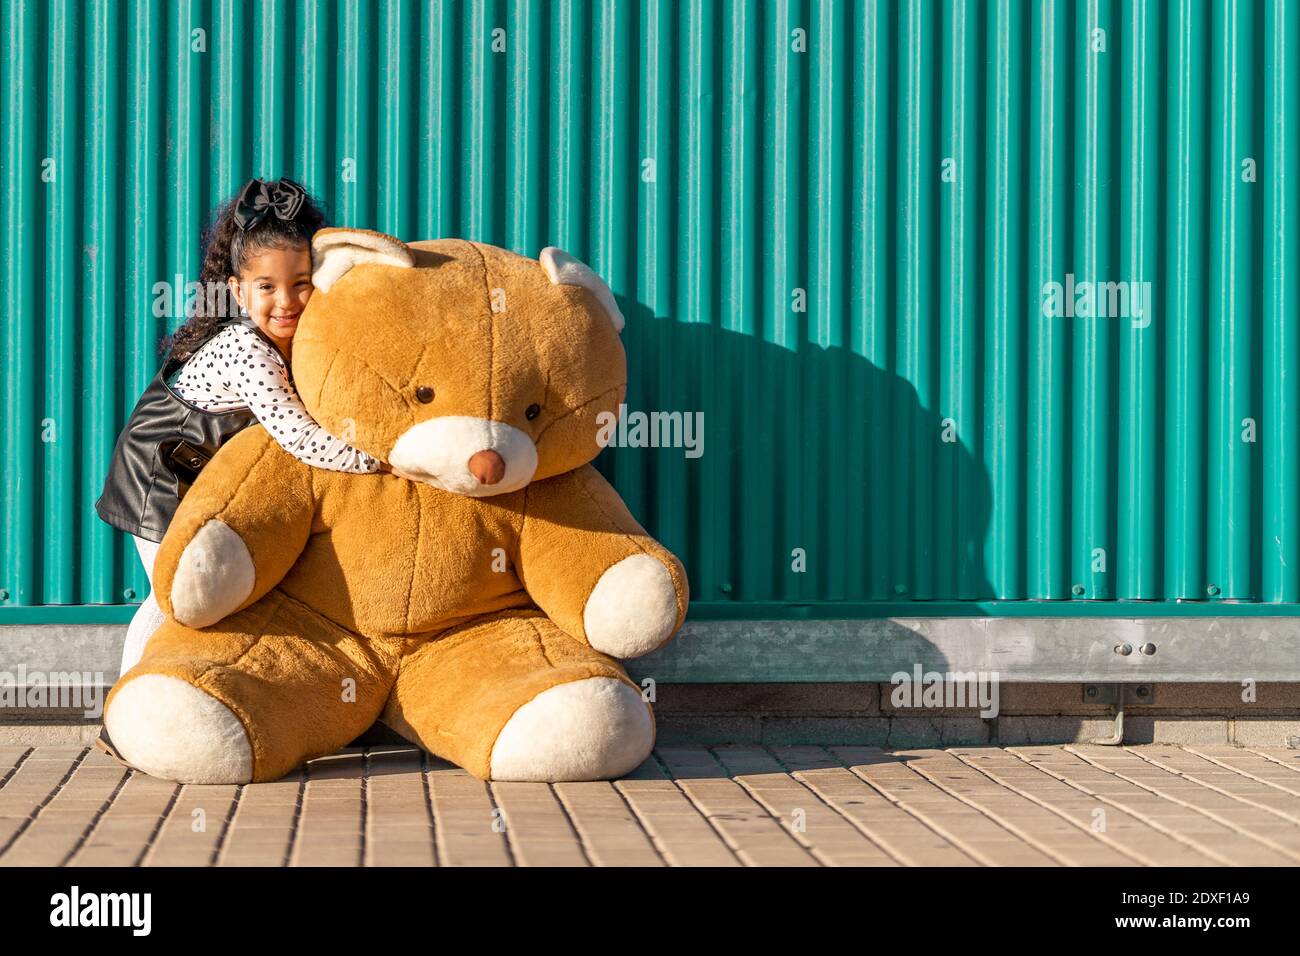 Jolie fille embrassant l'ours en peluche tout en se tenant contre le mur vert Banque D'Images